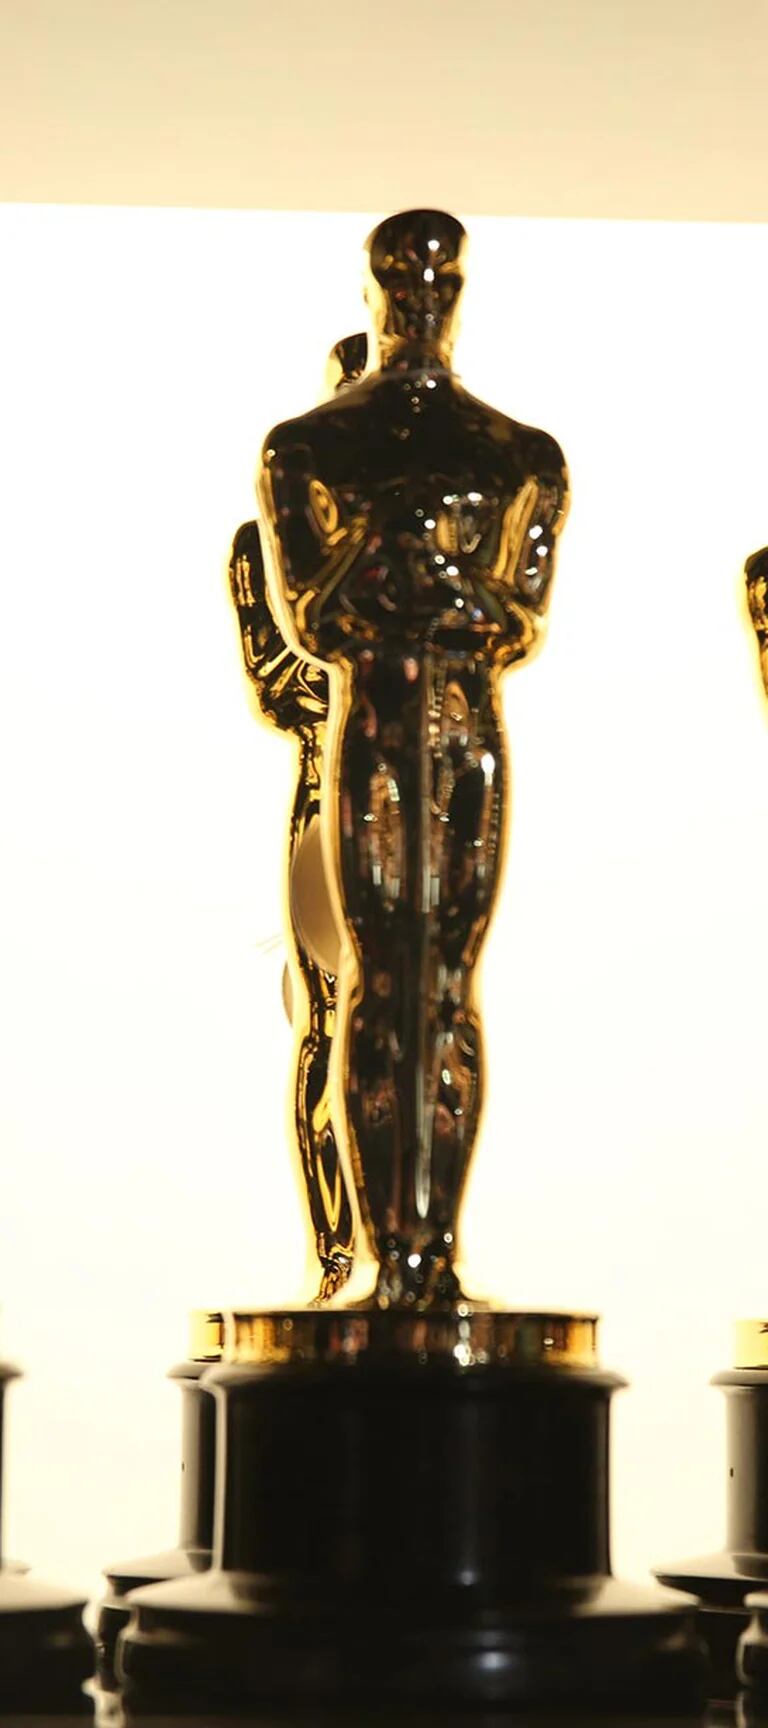 Los premios Oscar dejan 8 categorías fuera de la transmisión en vivo -  Tikitakas